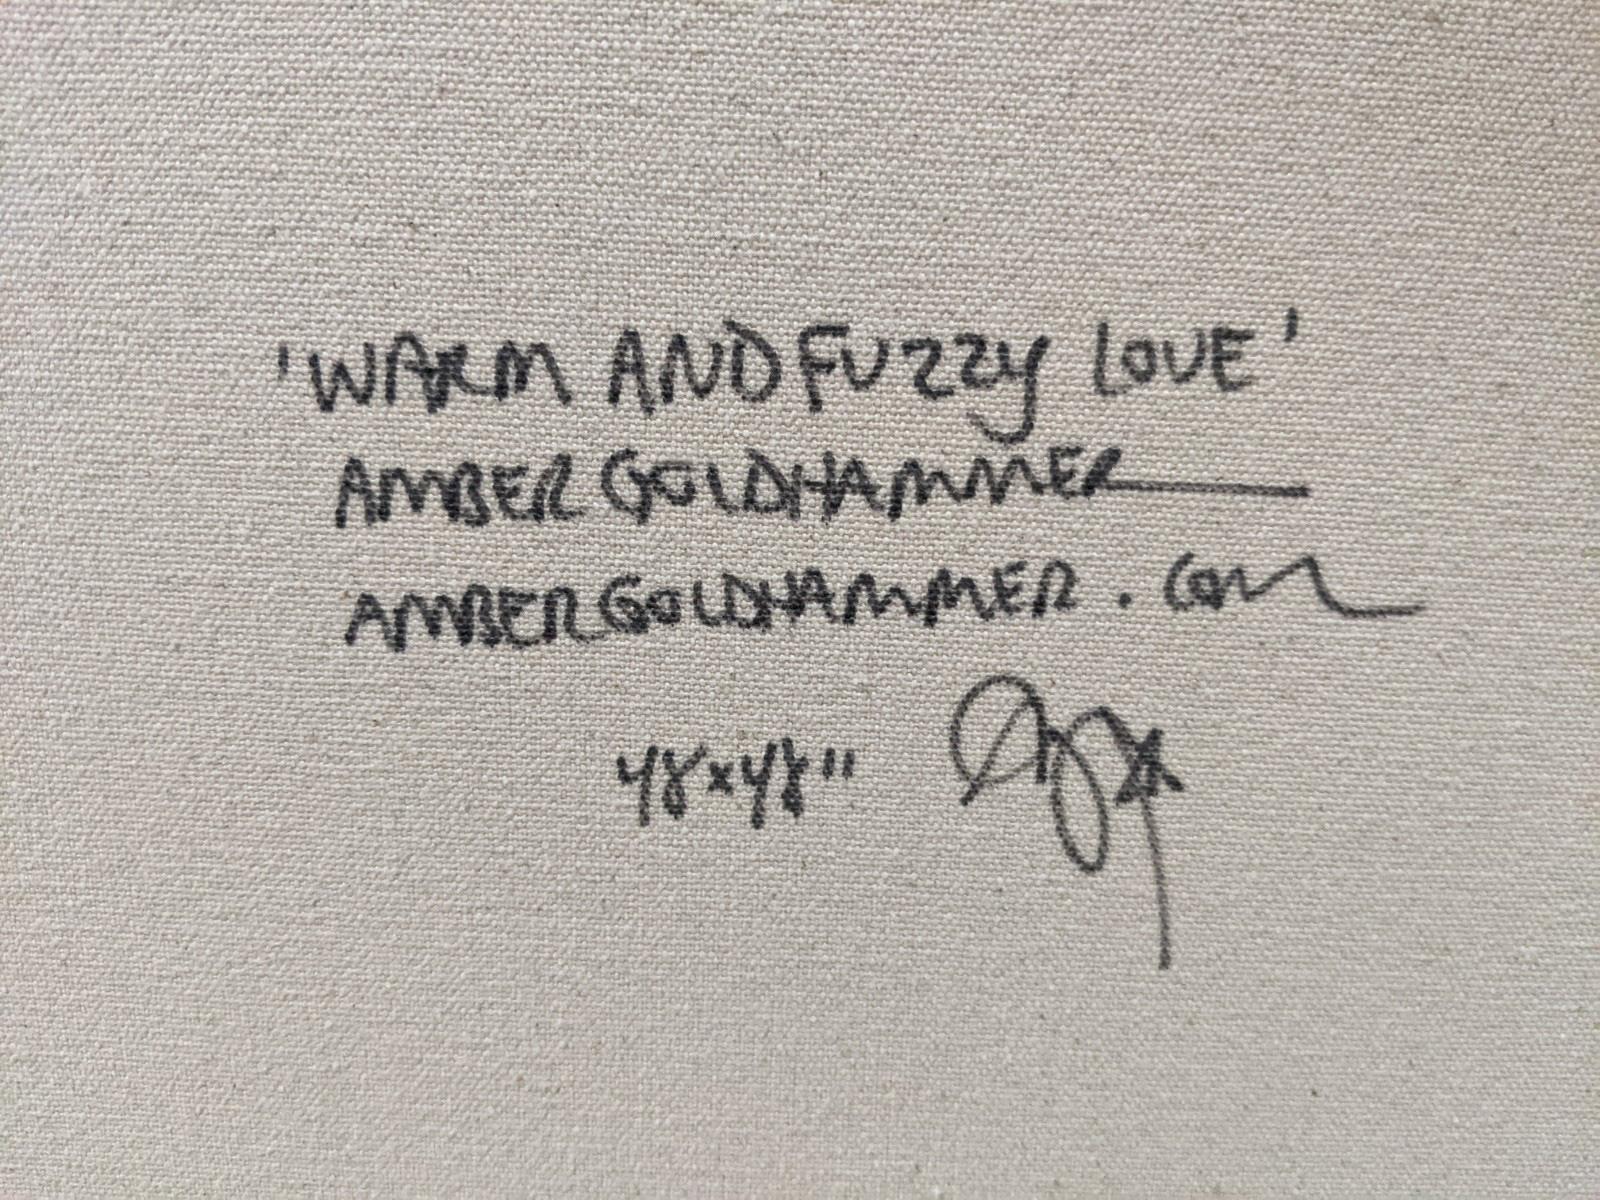 amber in graffiti